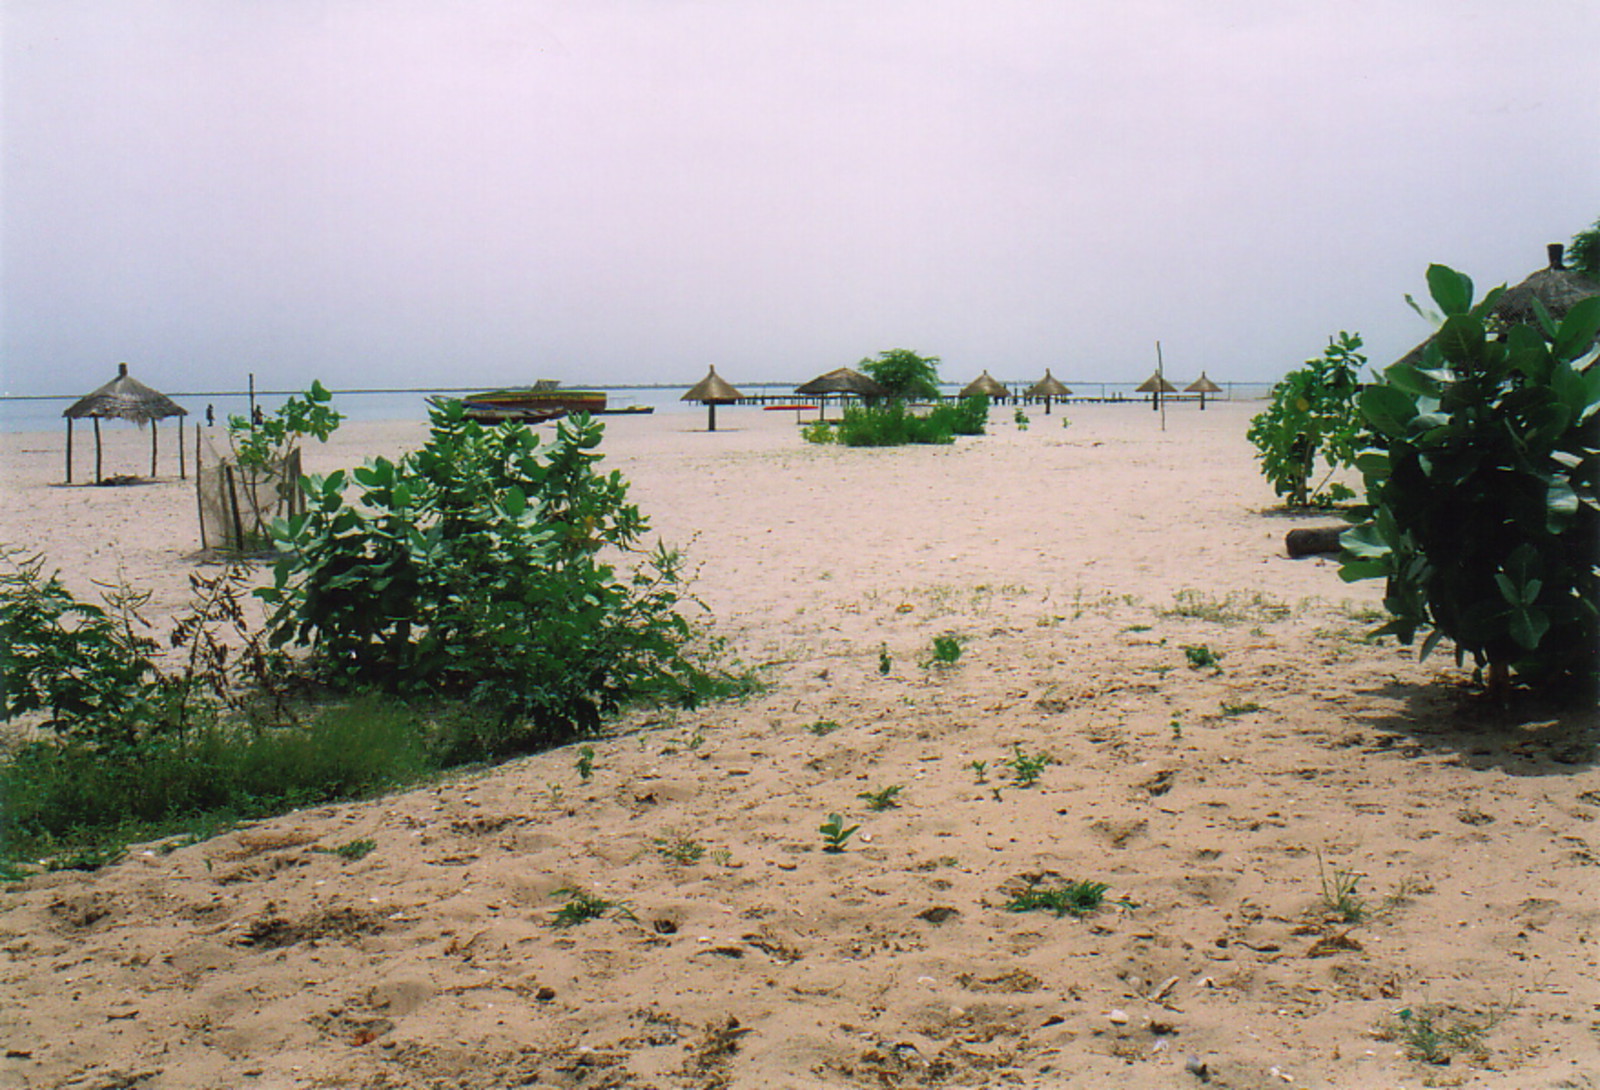 The beach in Djiffer